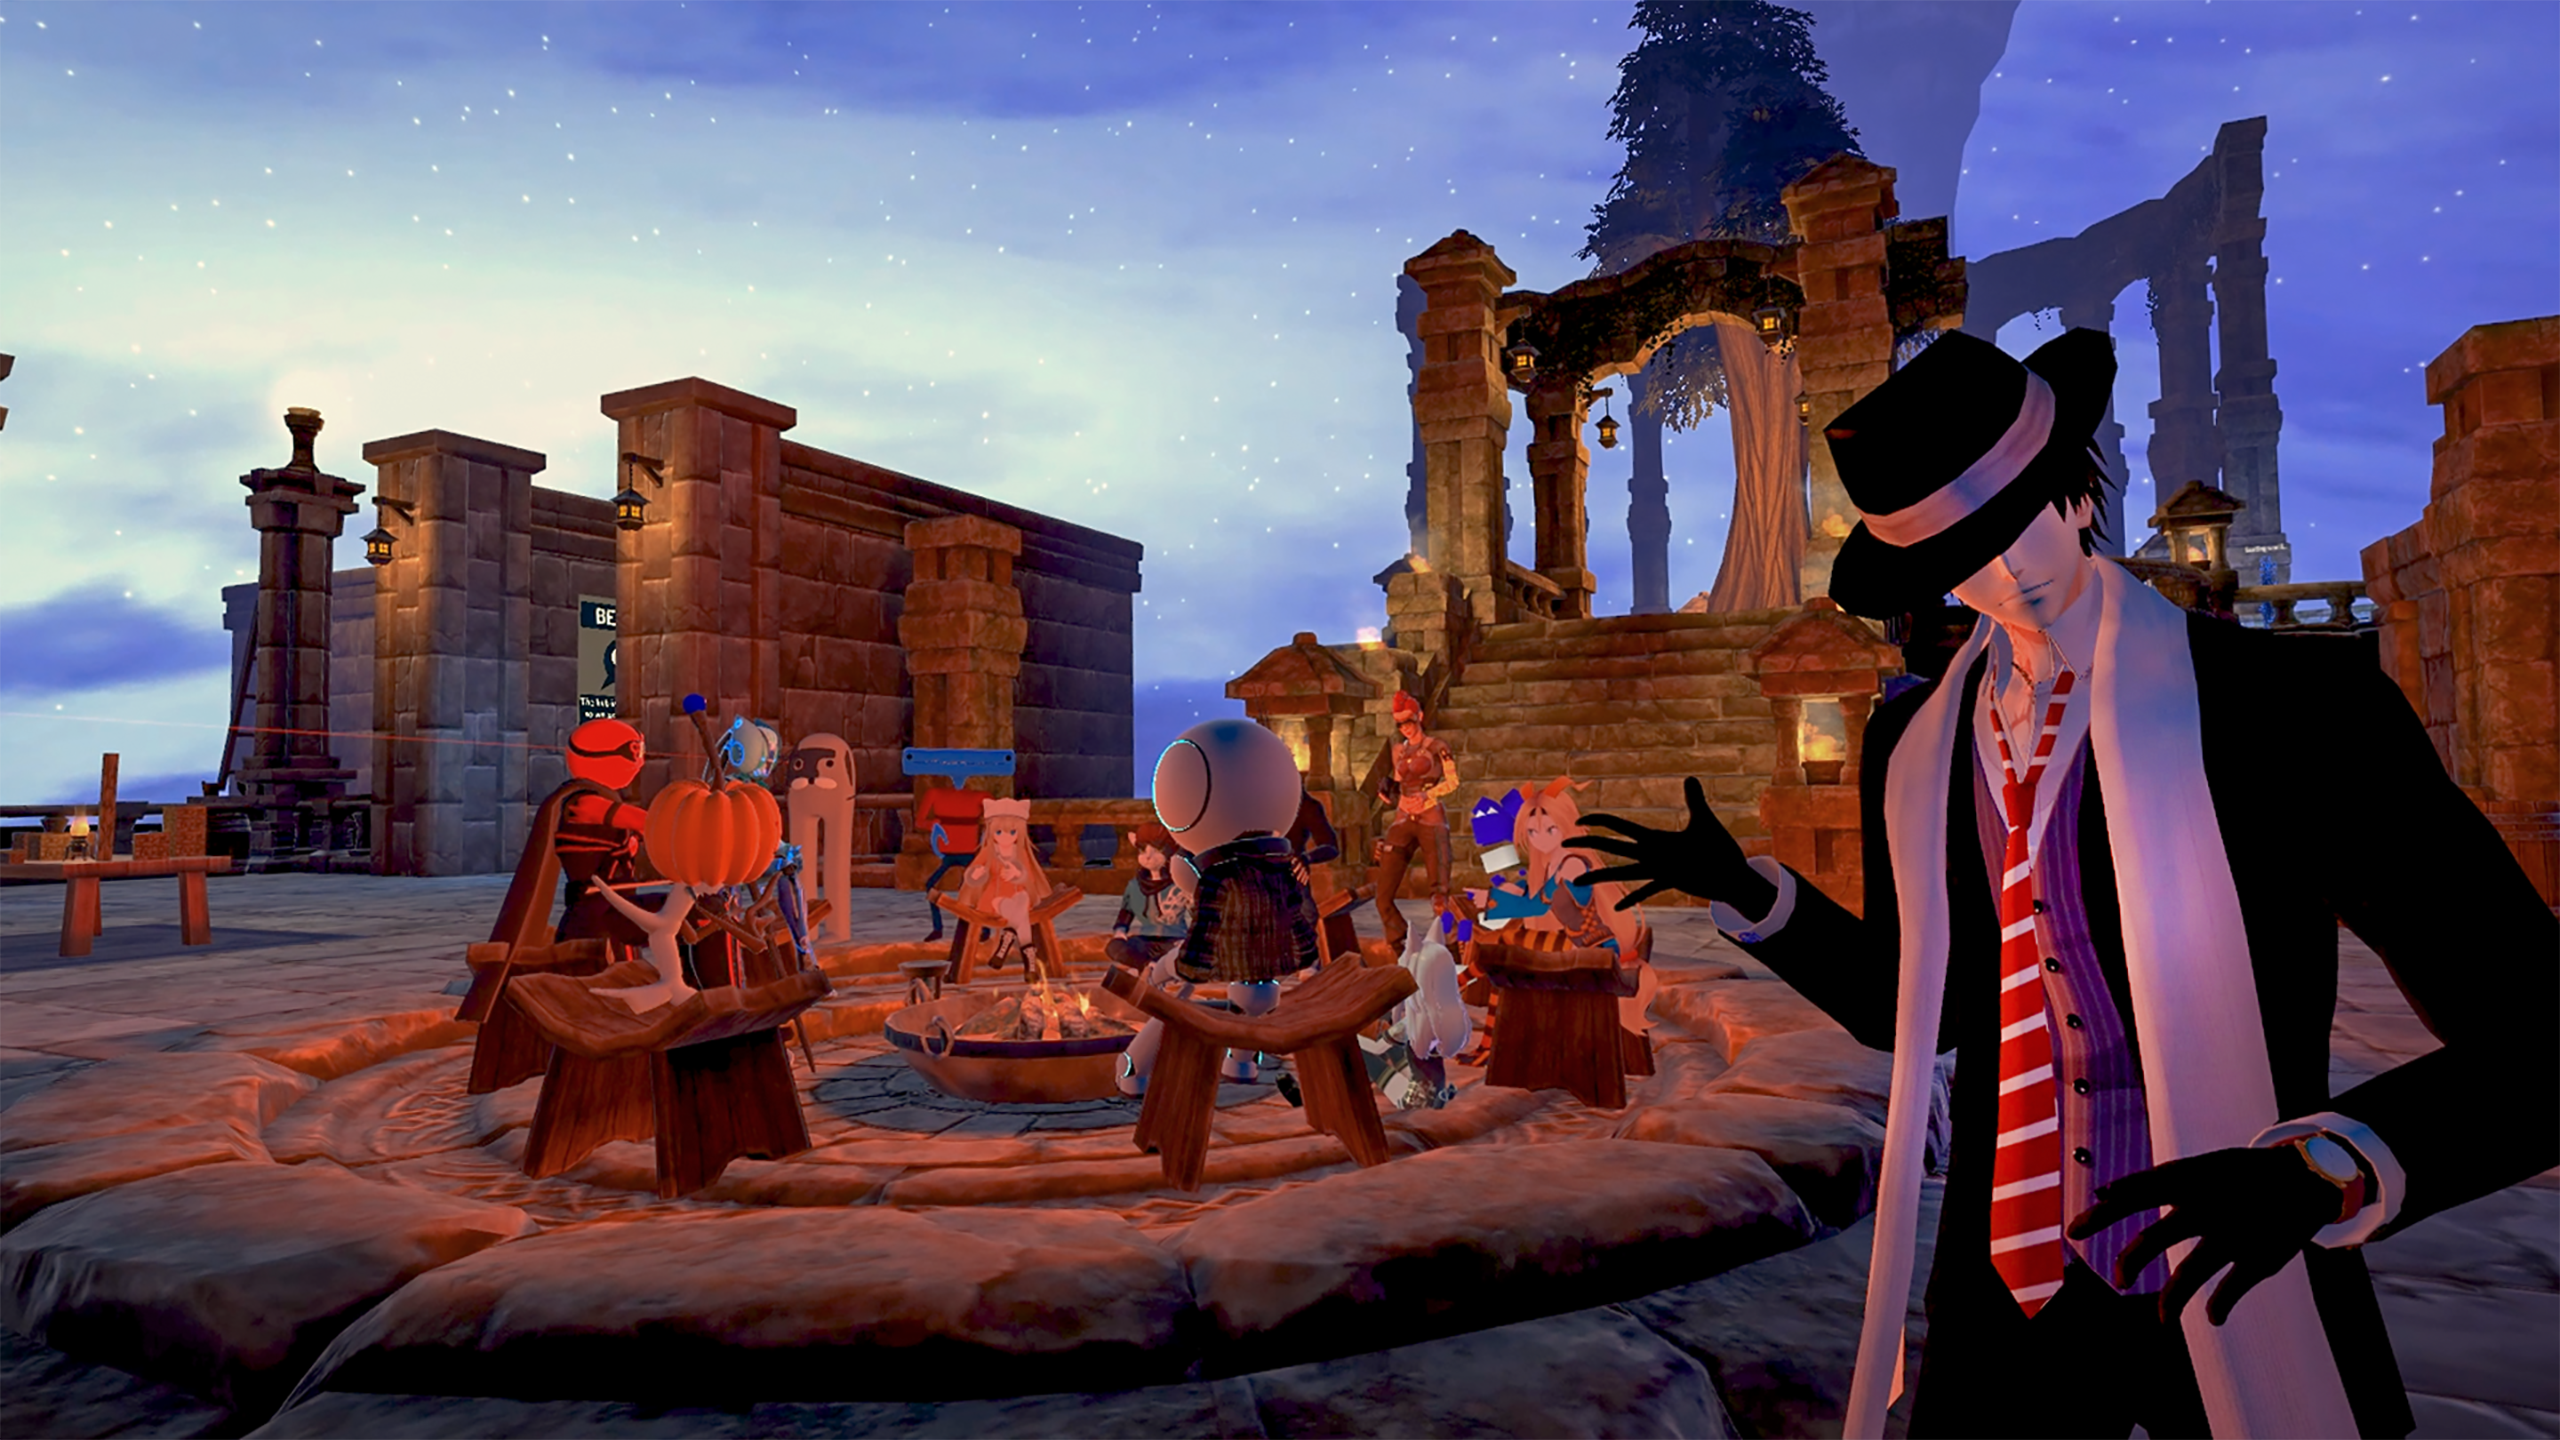 图片展示了一款游戏内的场景，几个卡通风格的角色围坐在篝火旁，背景是夜晚的星空和废墟建筑。